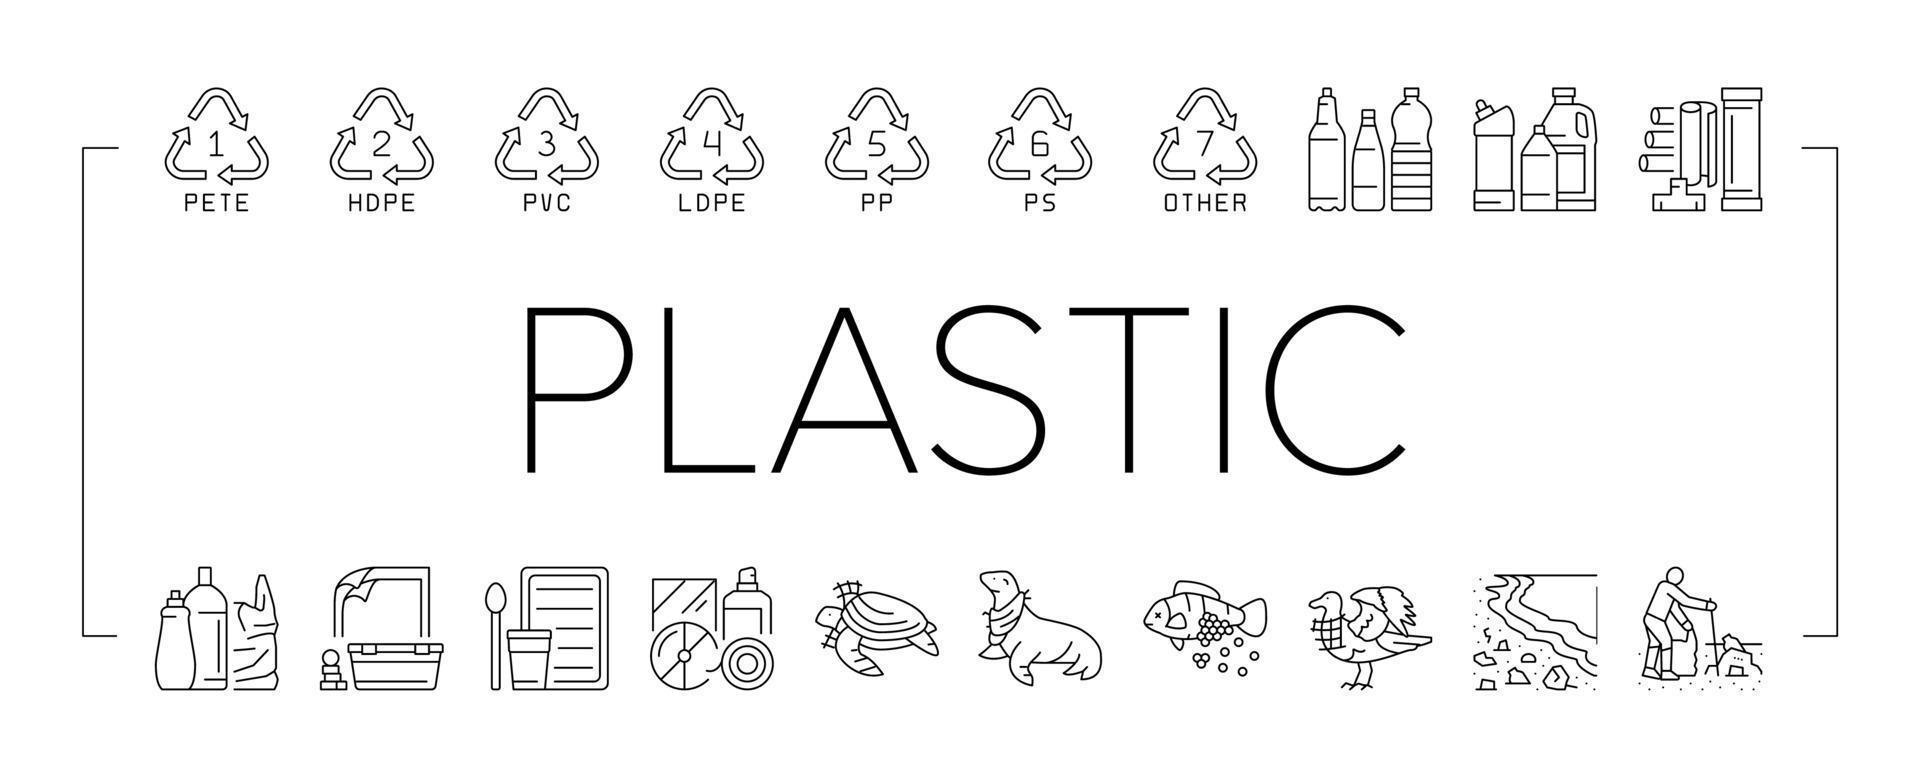 plastic verspilling natuur milieu pictogrammen reeks vector